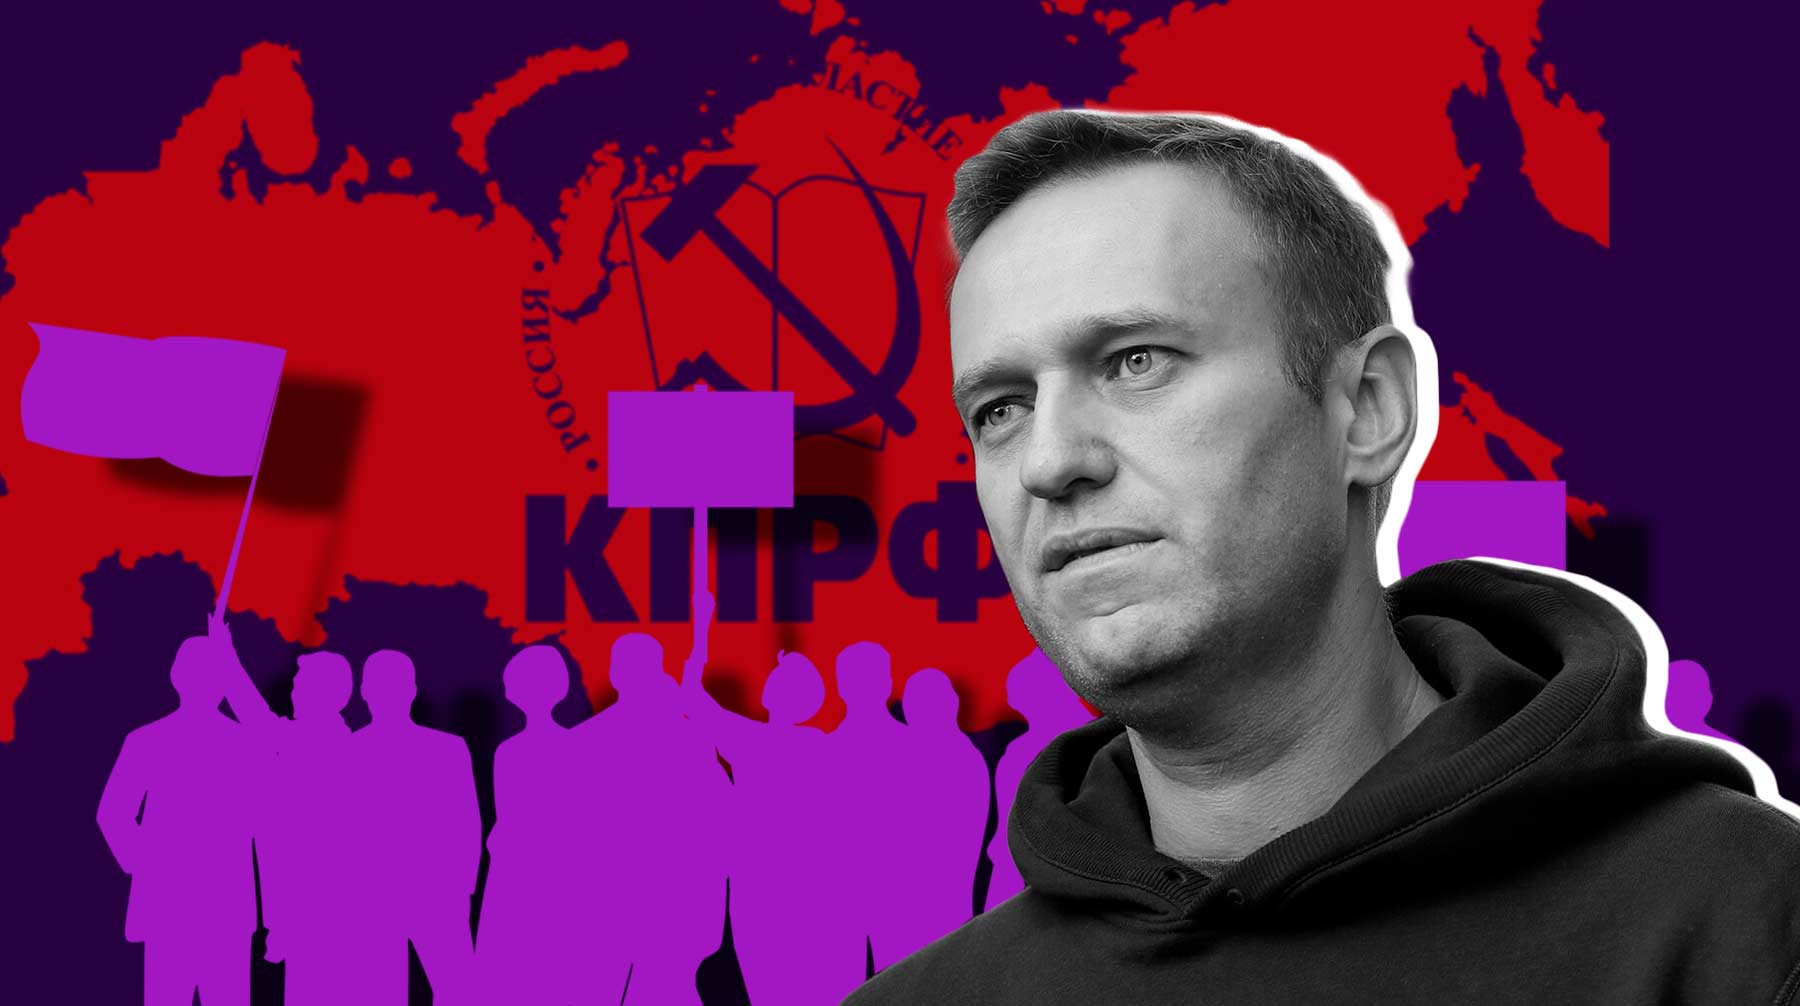 Dailystorm - КПРФ отказалась поддерживать митинги за освобождение Навального